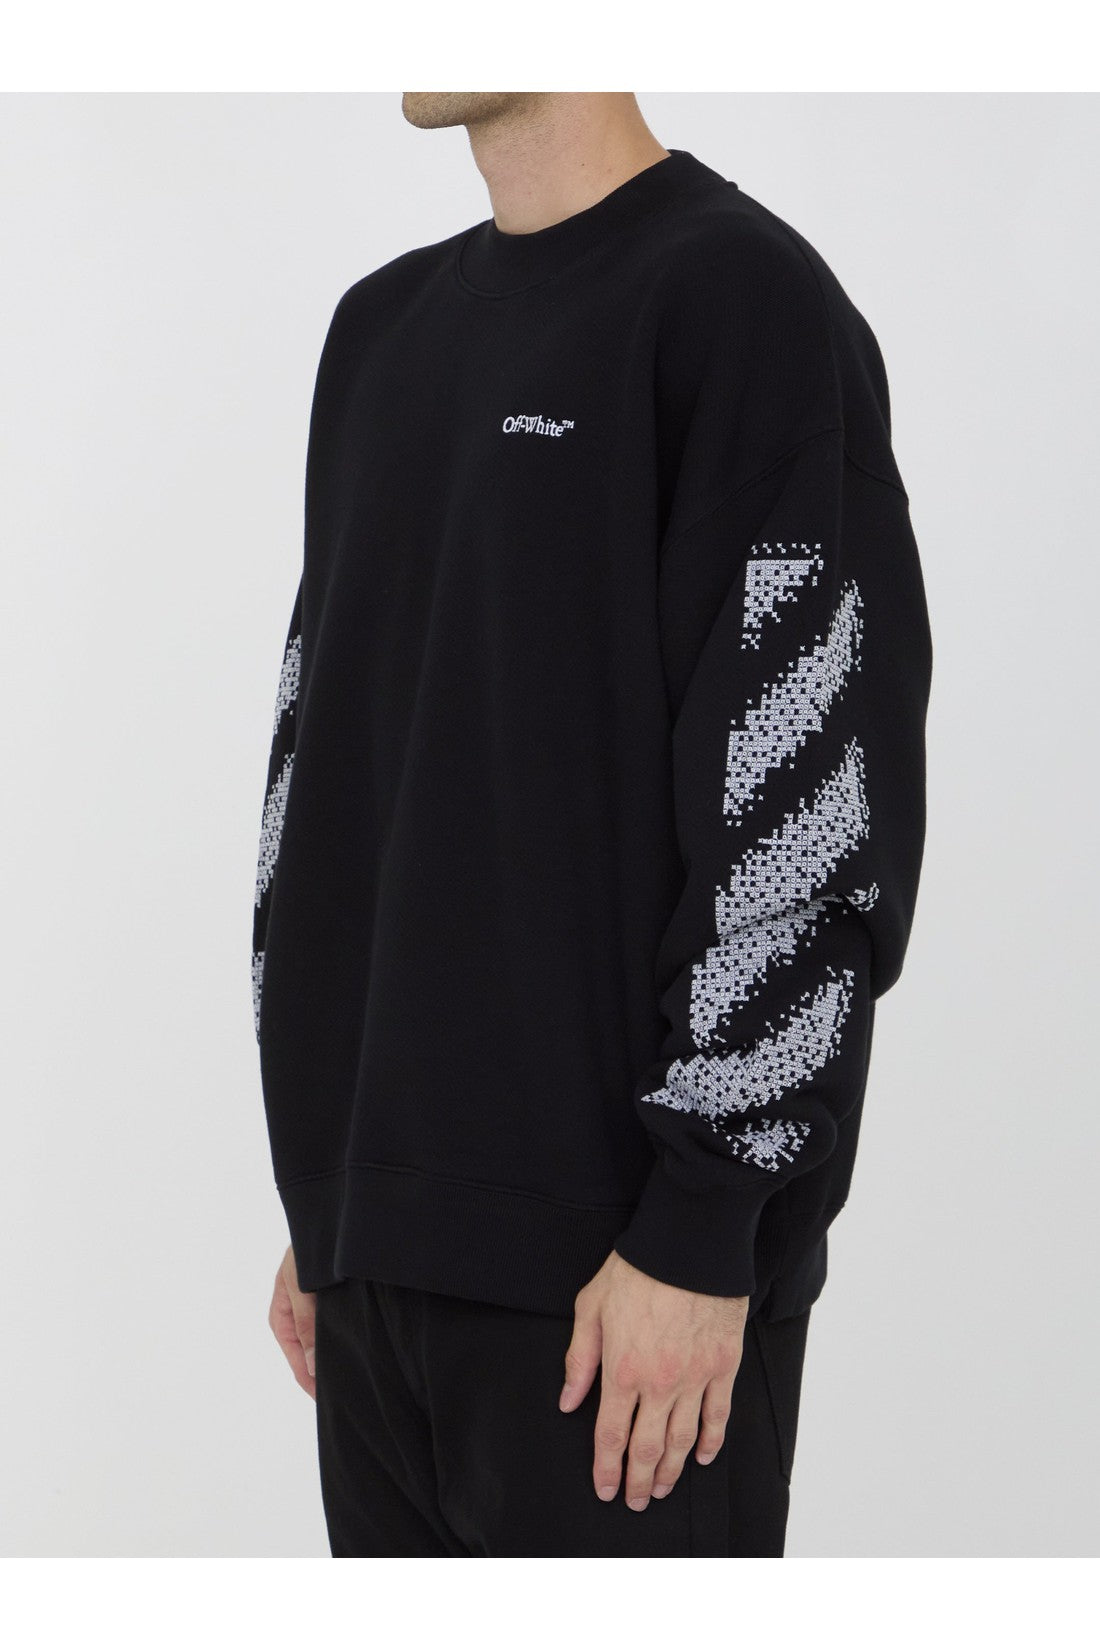 Pixel Diag sweatshirt